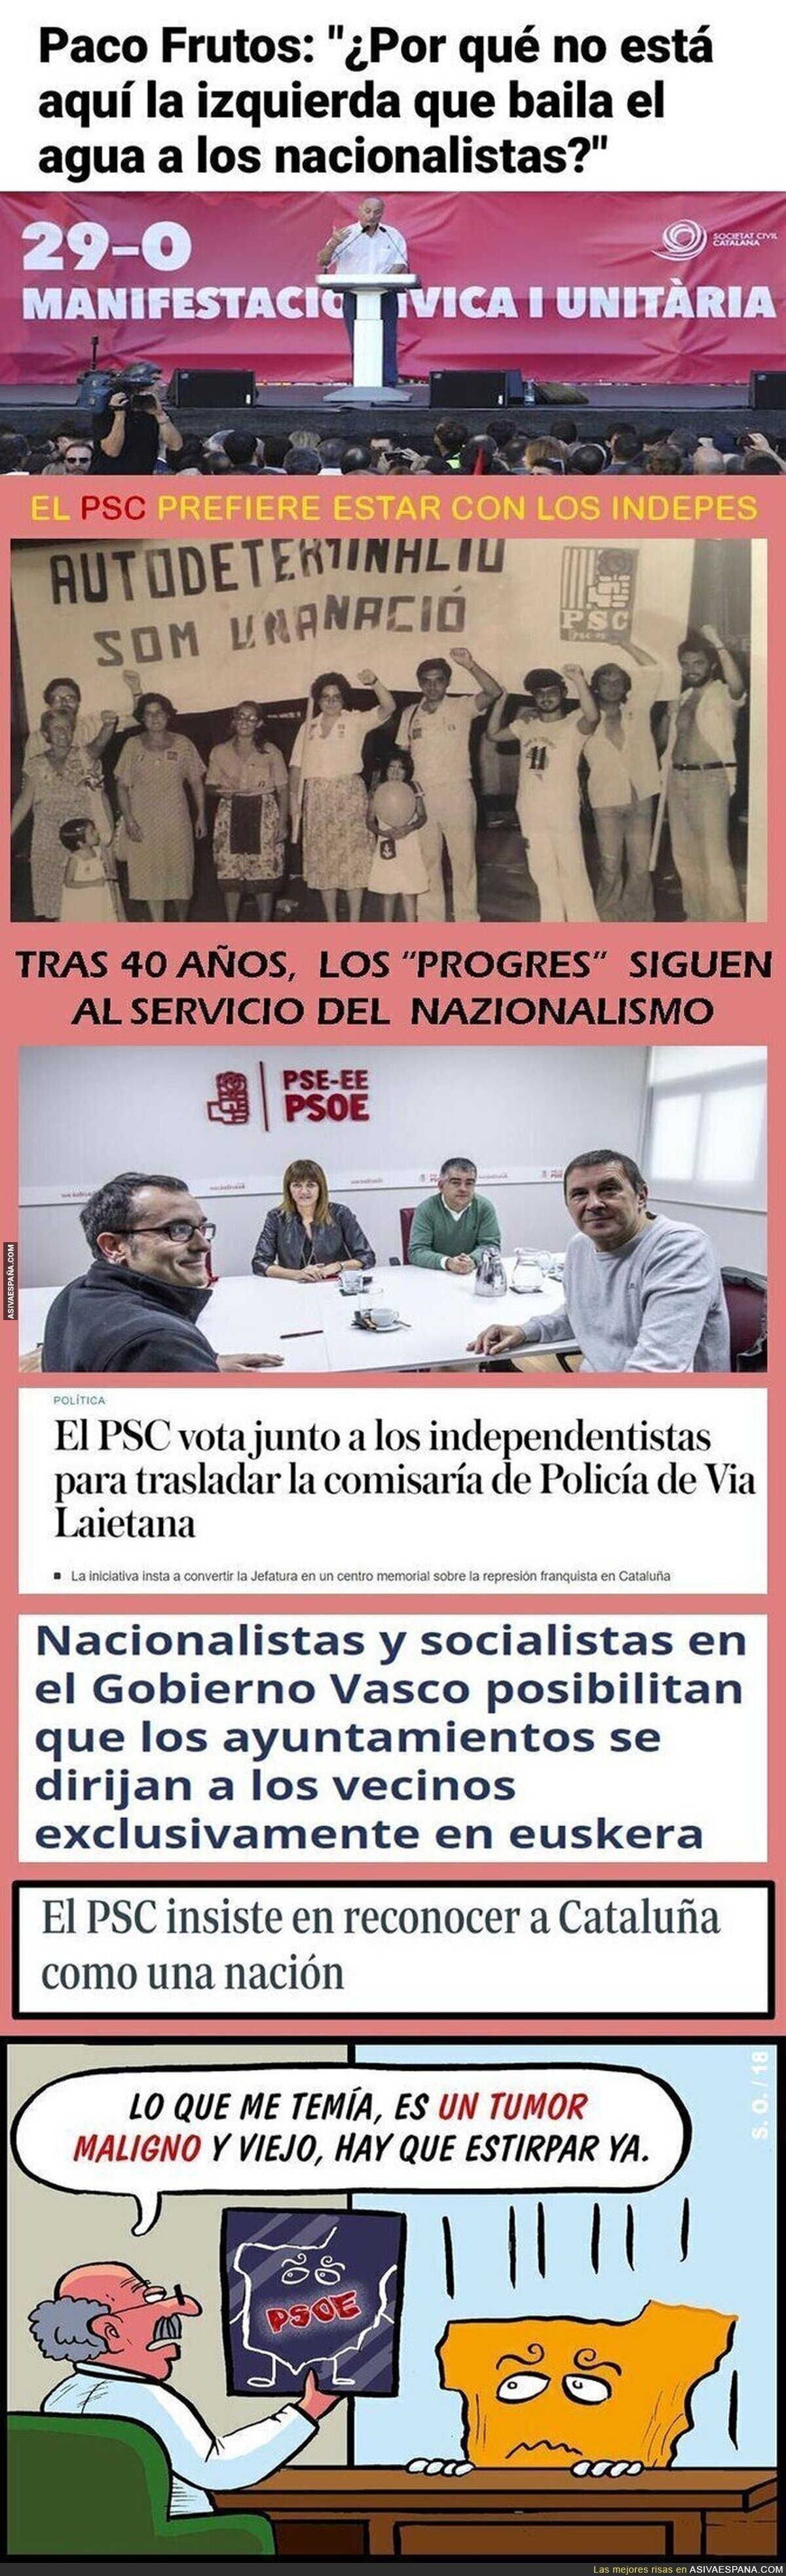 PSOE: 50 años peloteando a los nacionalistas